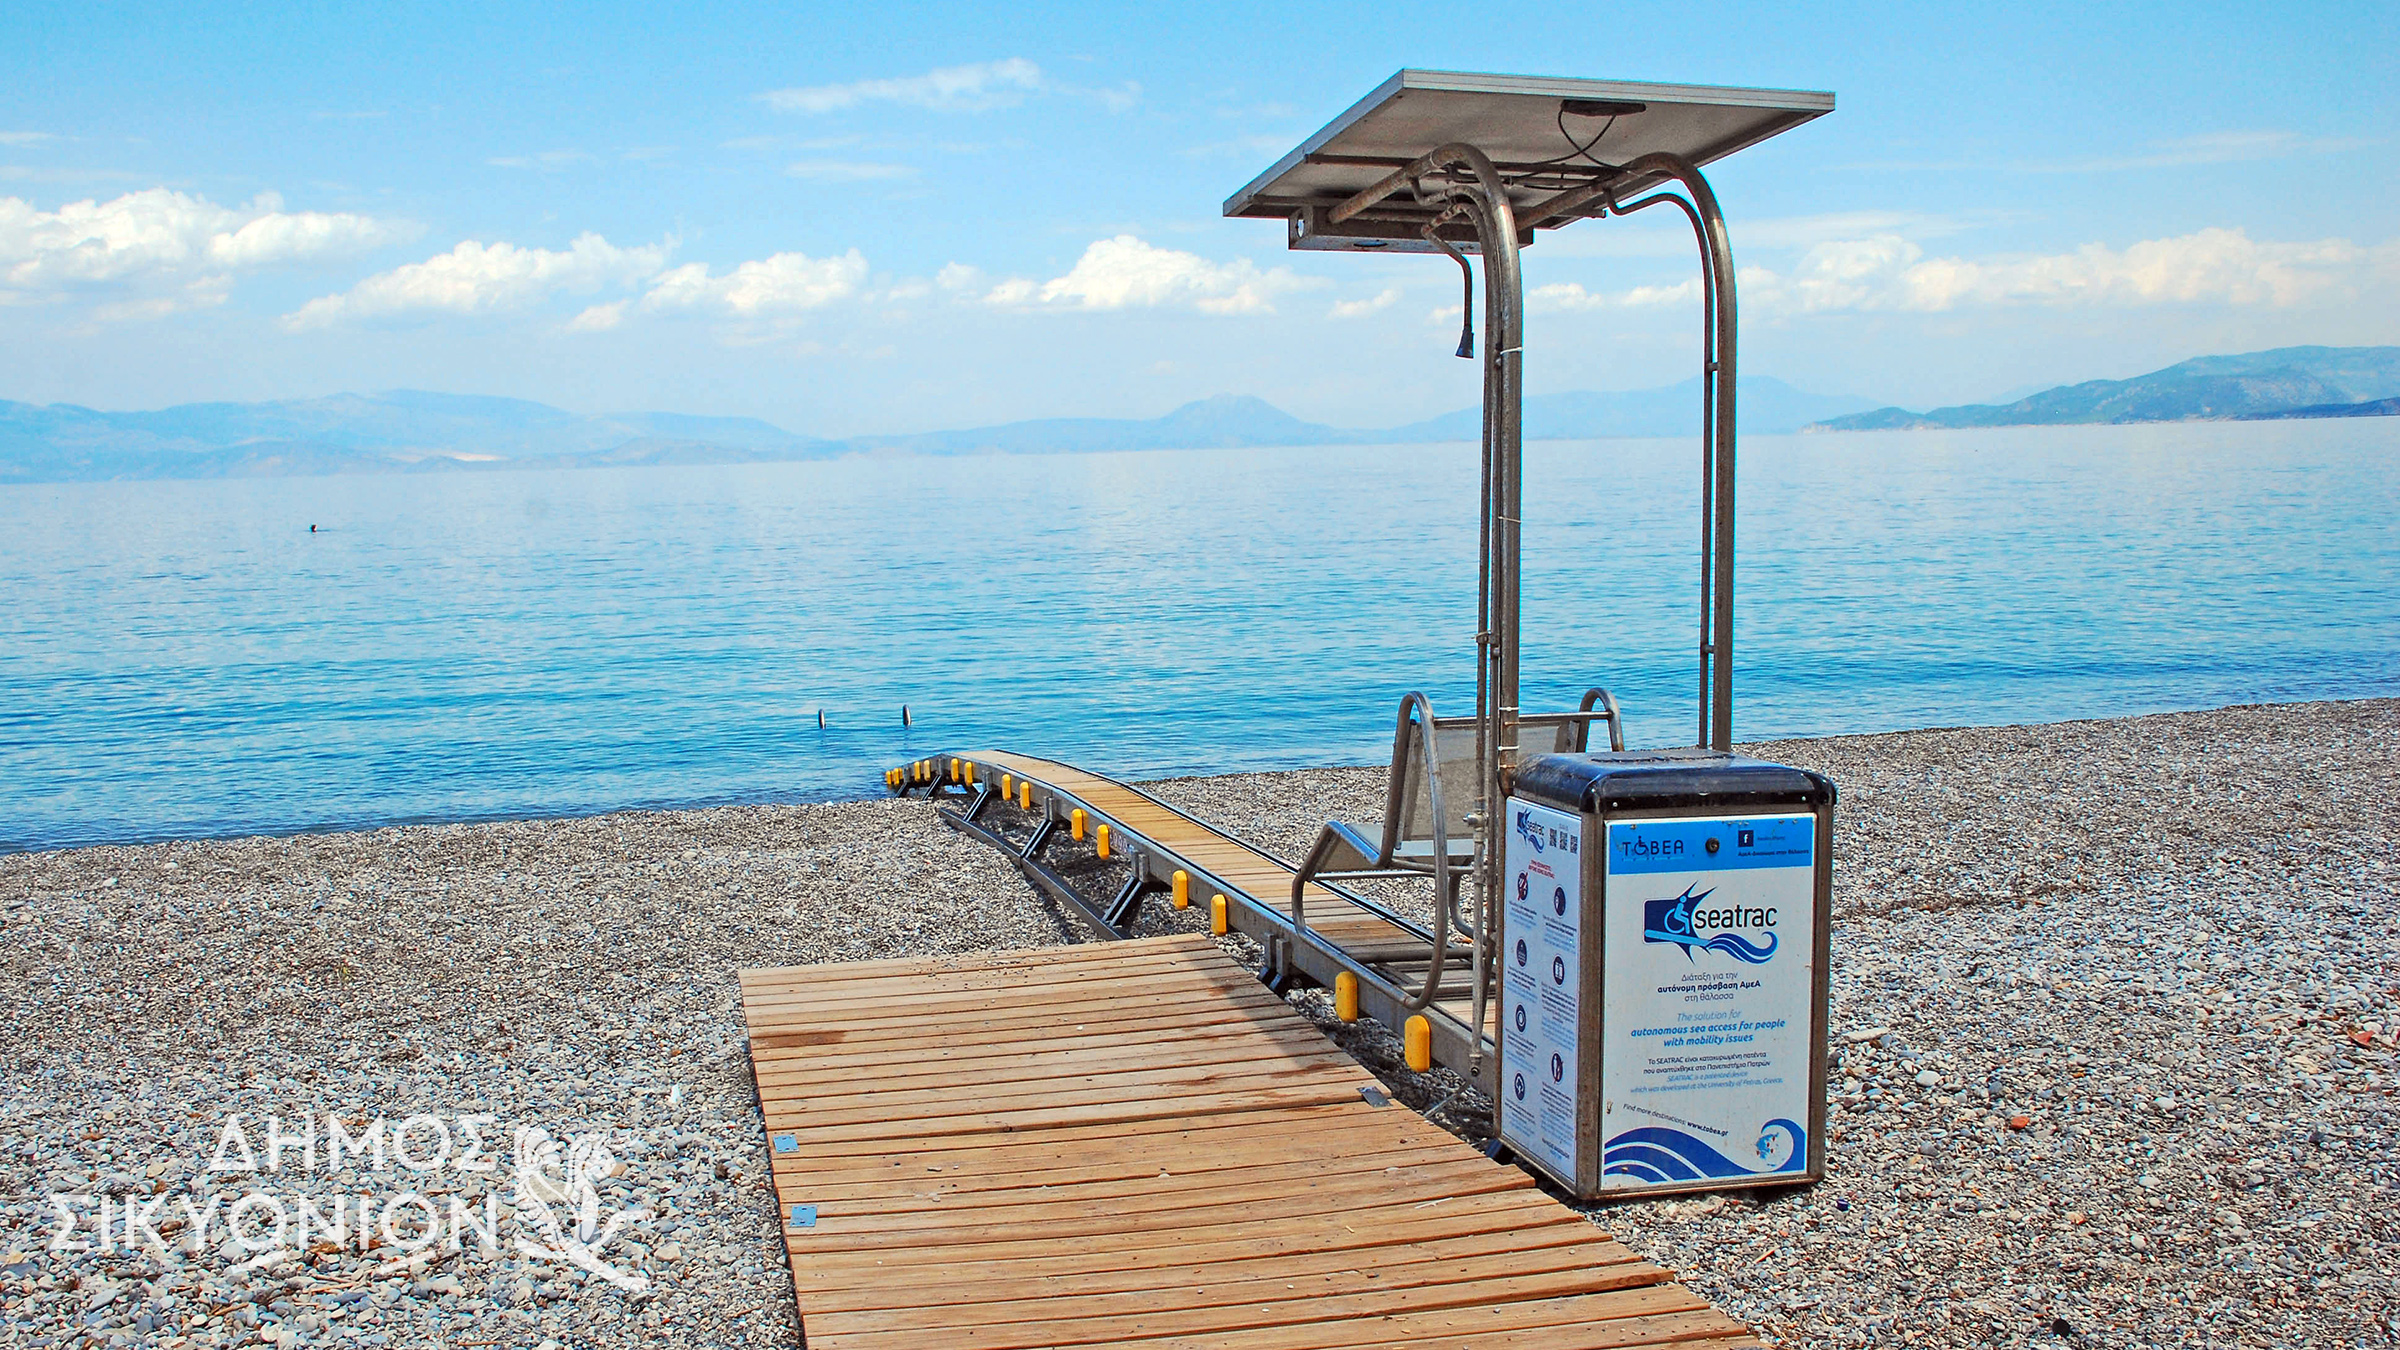 Δήμος Σικυωνίων: Ασφαλής και αυτόνομη πρόσβαση στην θάλασσα για ΑΜΕΑ